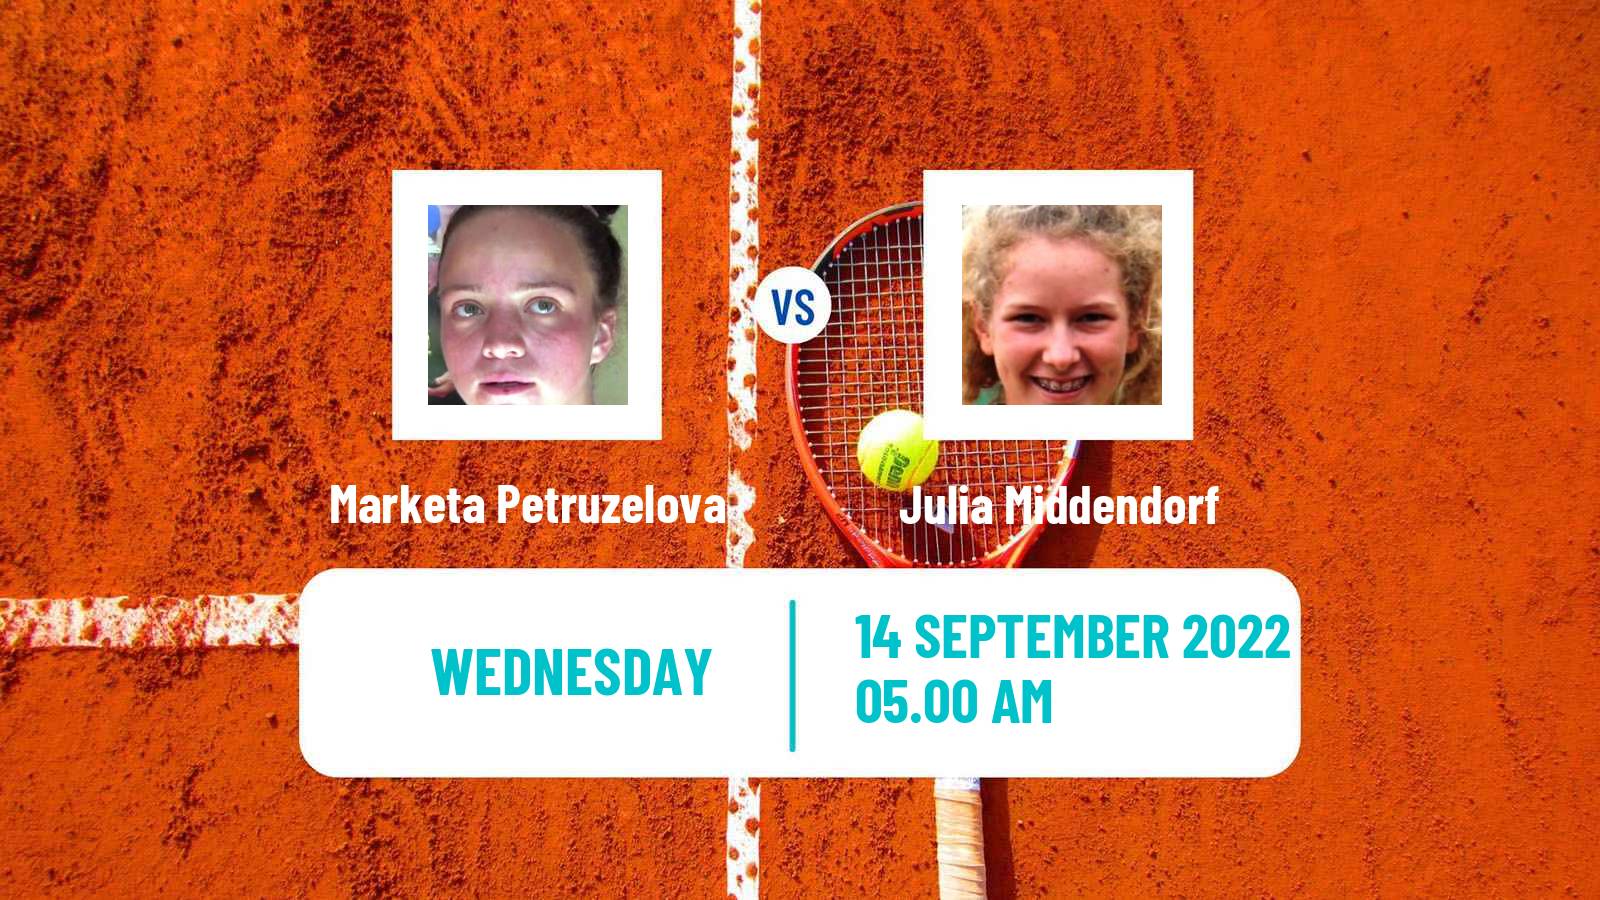 Tennis ITF Tournaments Marketa Petruzelova - Julia Middendorf